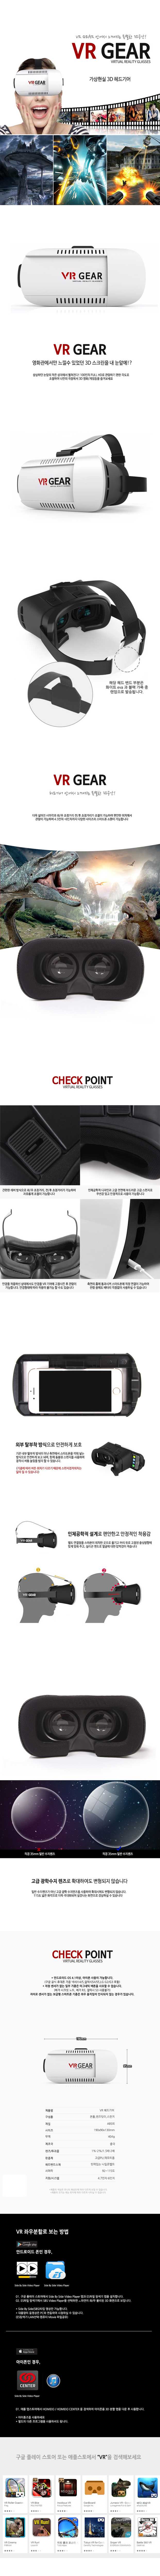 VR 가상현실 3D헤드기어 32,000원 - 디자인에버 디지털, 모바일 액세서리, 기타 주변기기, VR/3D안경 바보사랑 VR 가상현실 3D헤드기어 32,000원 - 디자인에버 디지털, 모바일 액세서리, 기타 주변기기, VR/3D안경 바보사랑